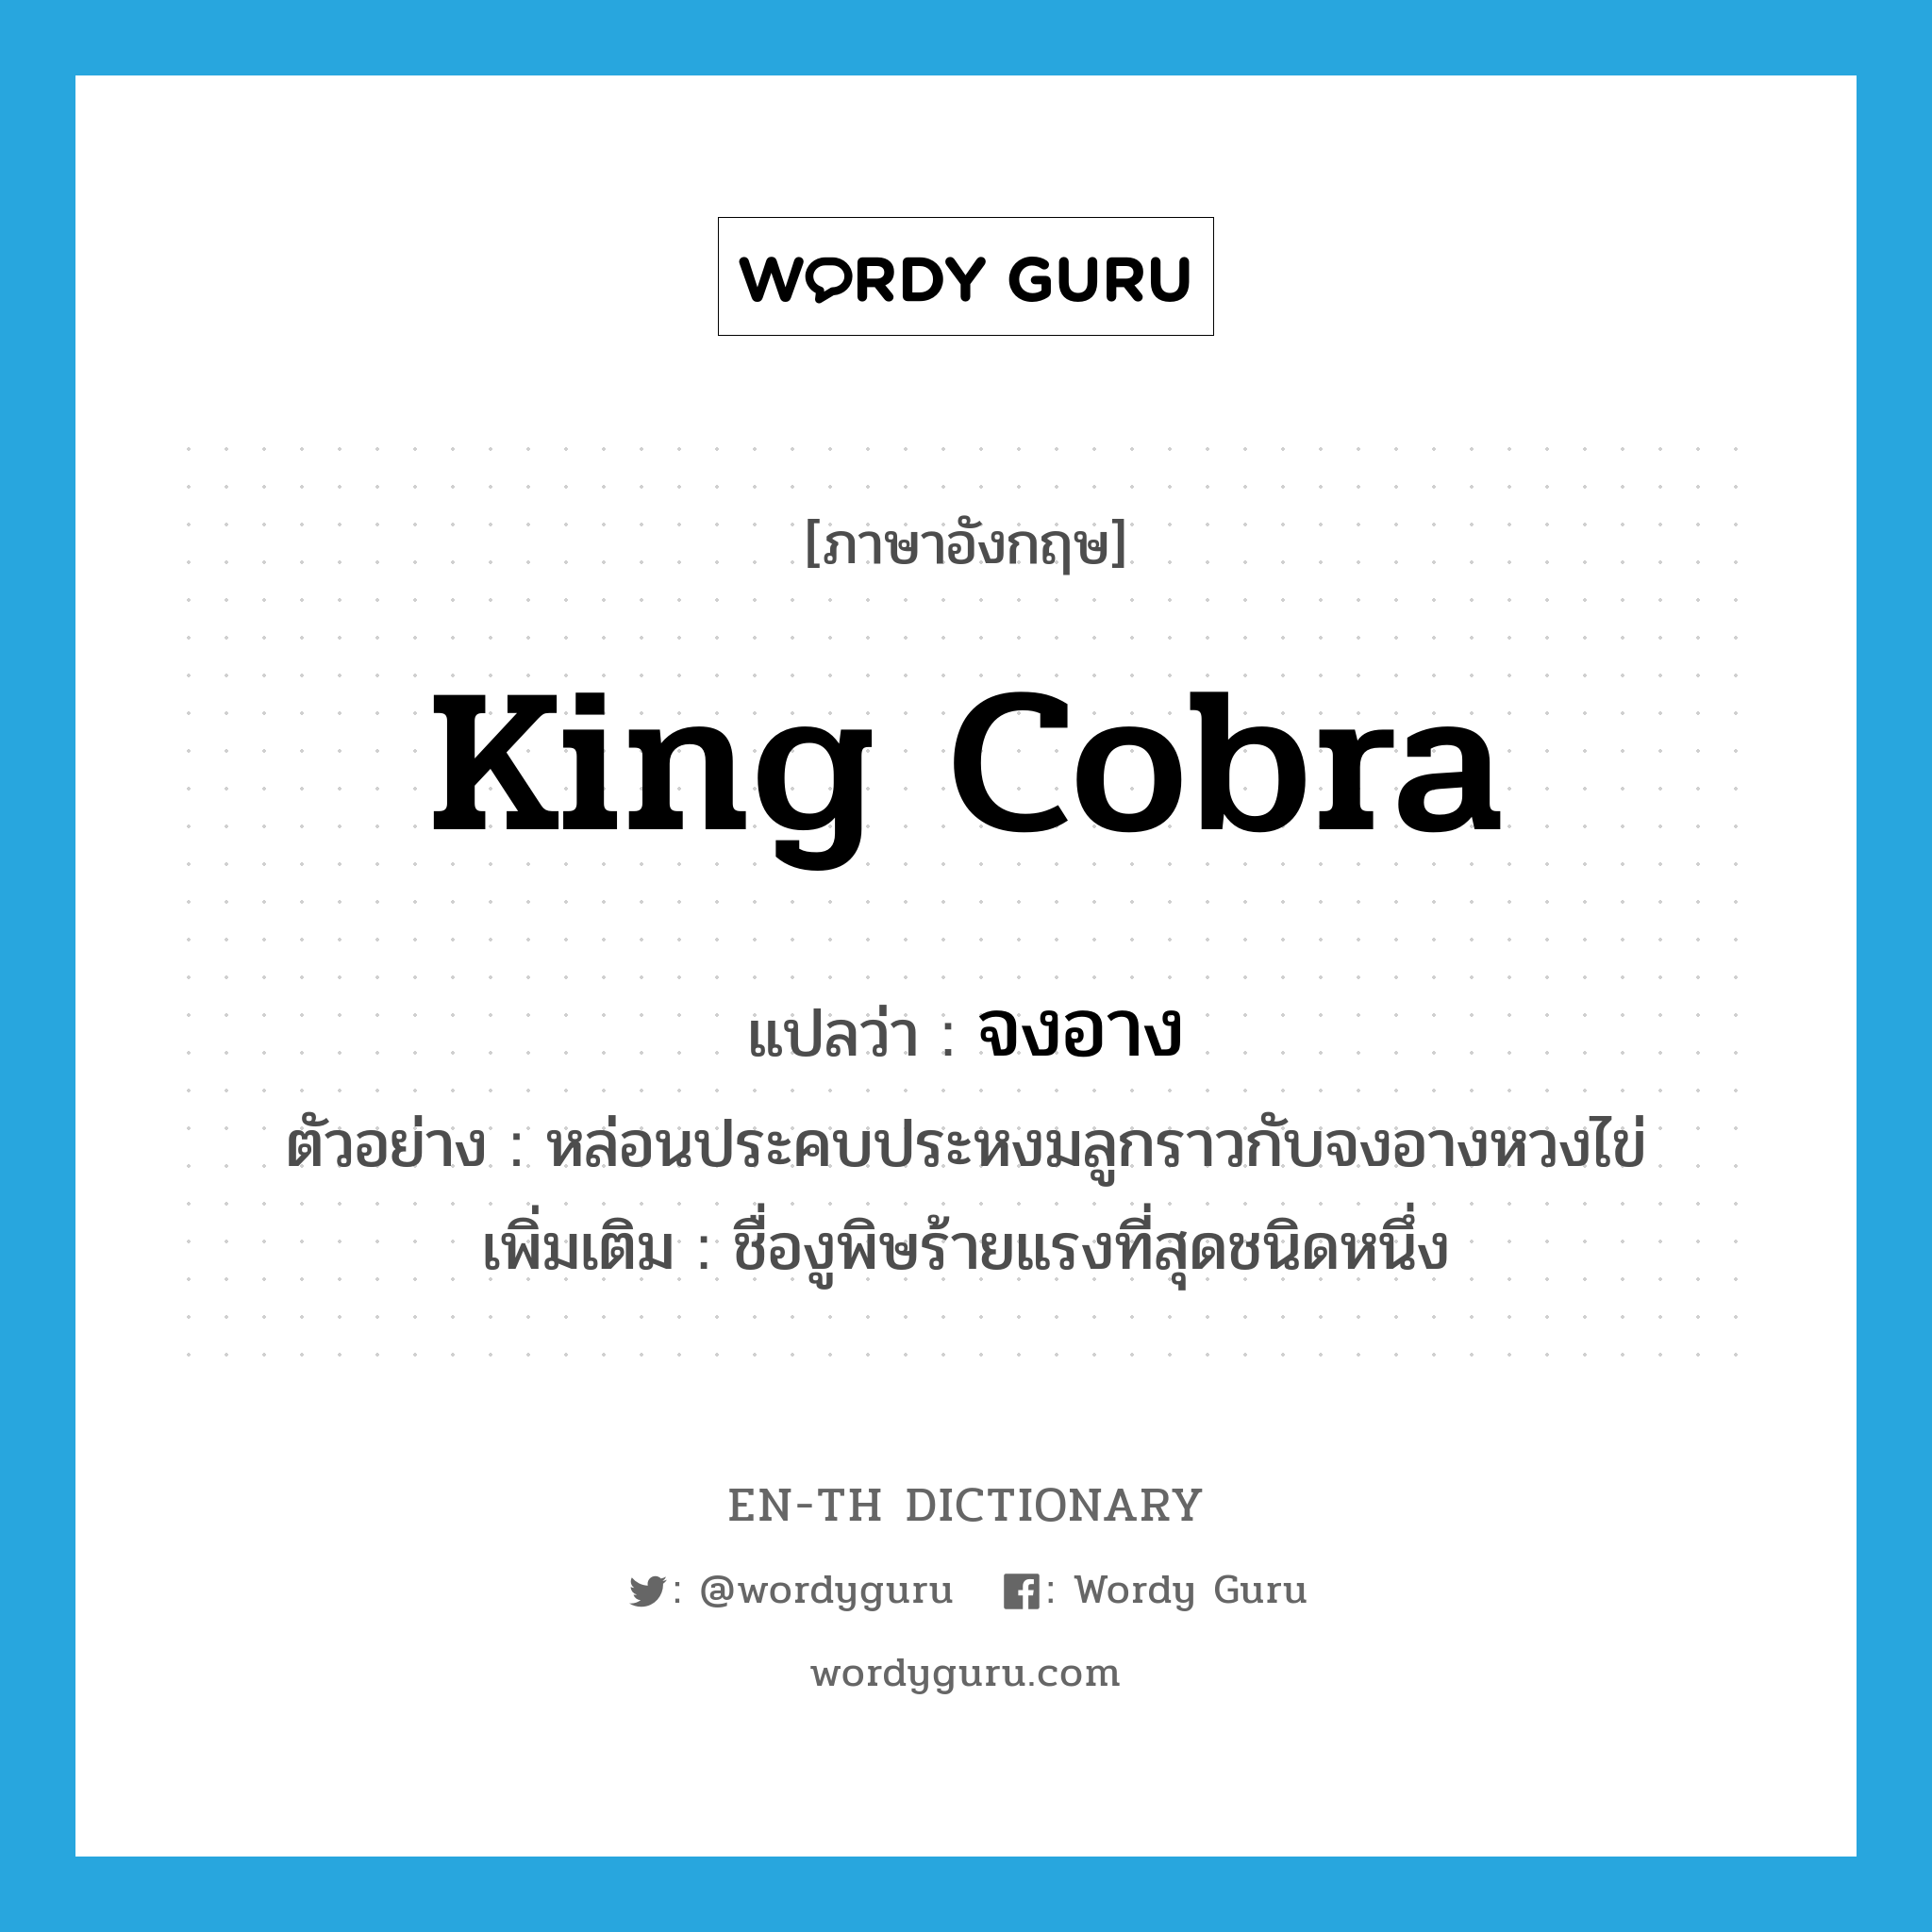 king cobra แปลว่า?, คำศัพท์ภาษาอังกฤษ king cobra แปลว่า จงอาง ประเภท N ตัวอย่าง หล่อนประคบประหงมลูกราวกับจงอางหวงไข่ เพิ่มเติม ชื่องูพิษร้ายแรงที่สุดชนิดหนึ่ง หมวด N